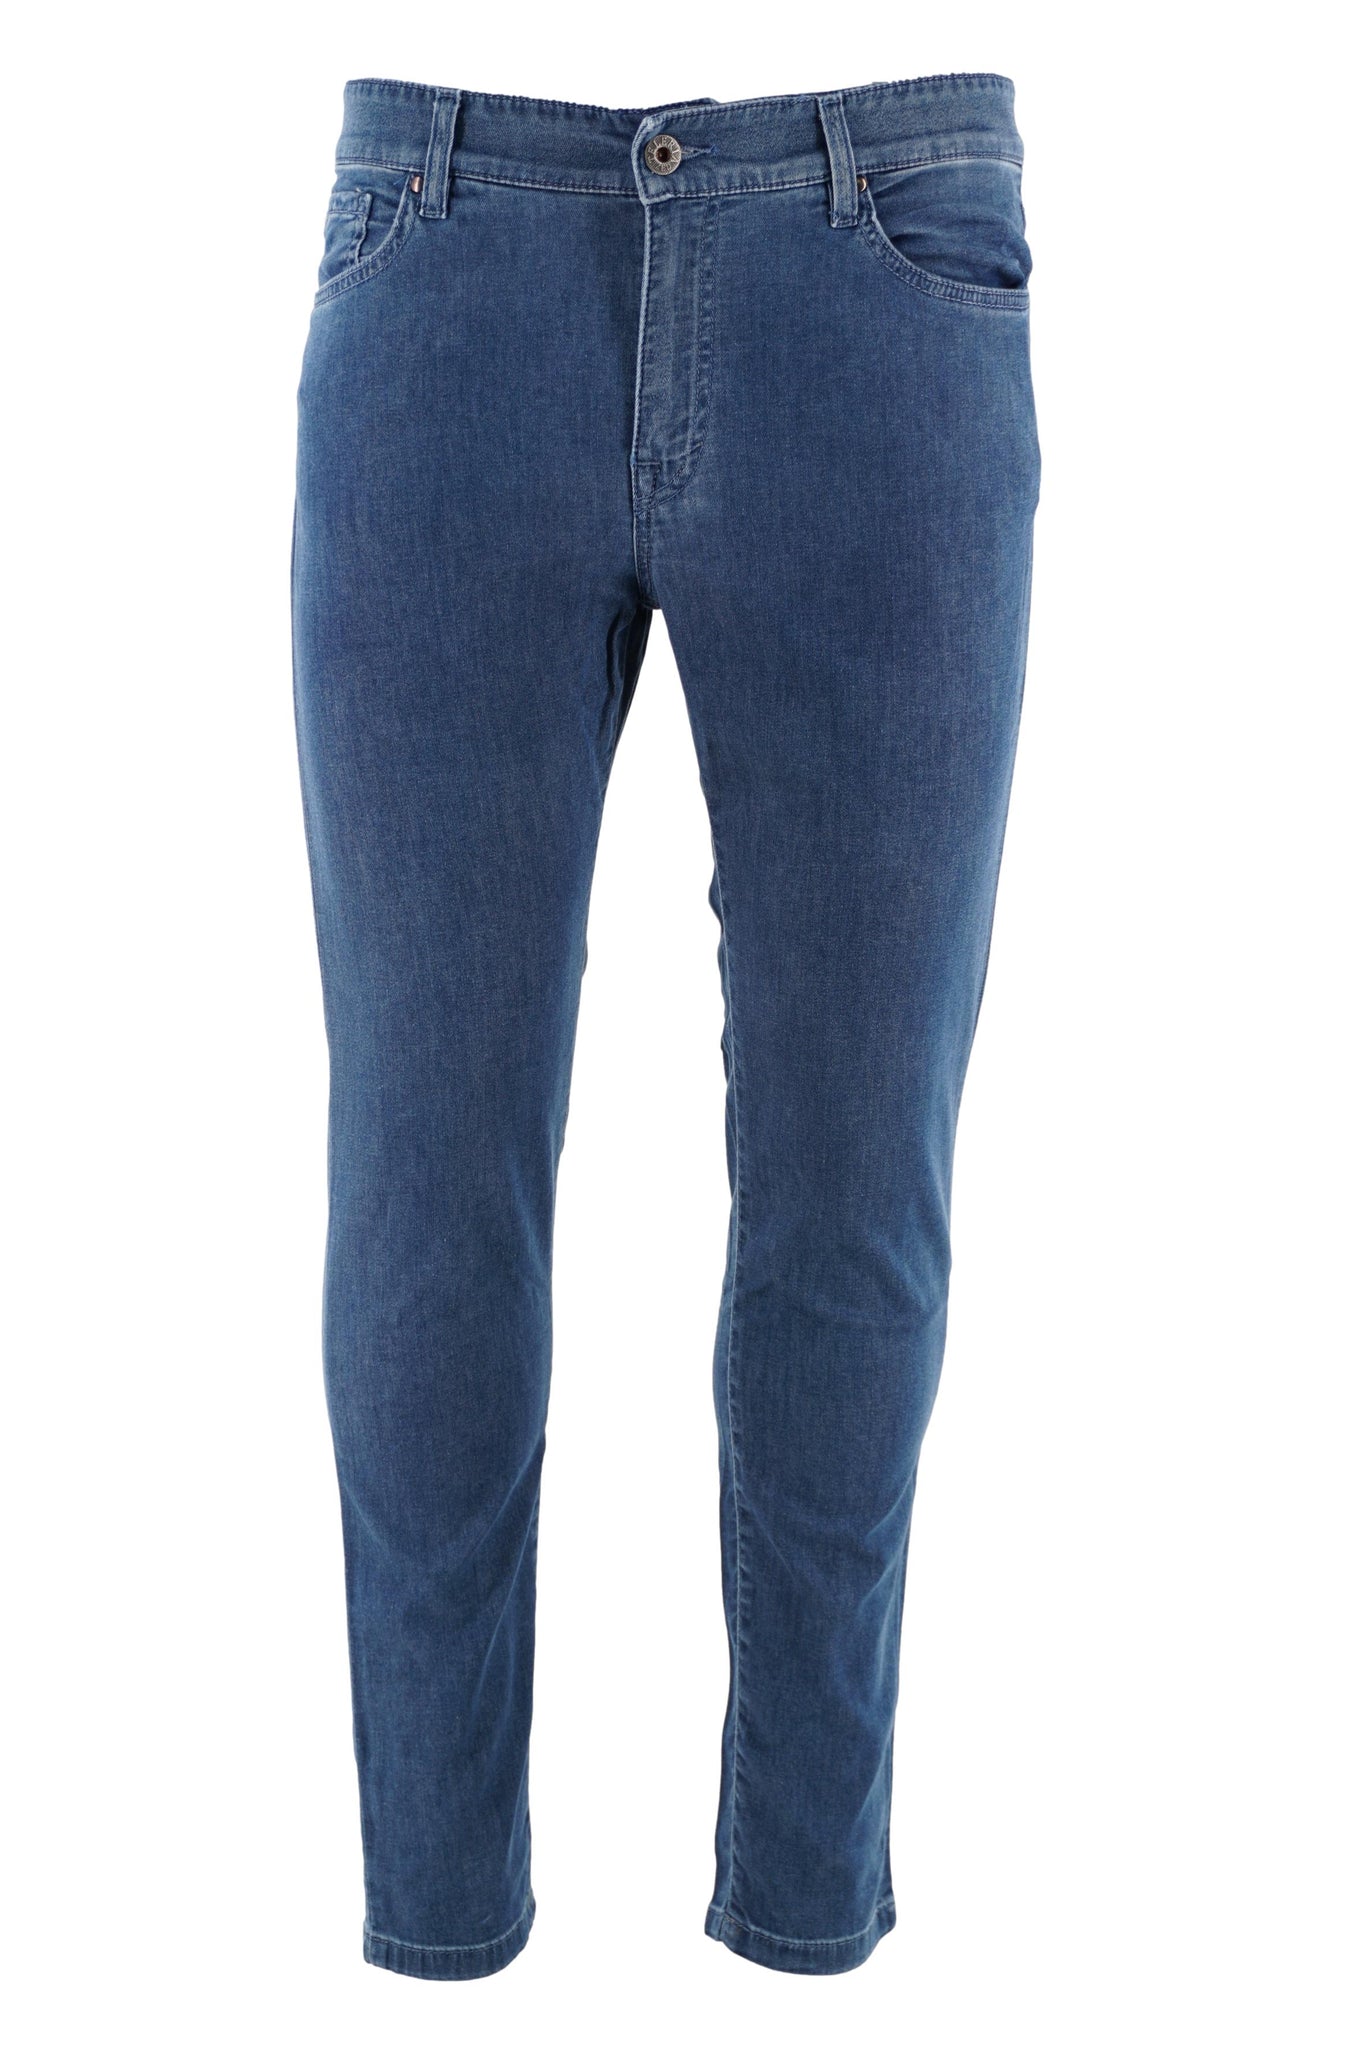 Jeans Leggero Lavaggio Medio / Jeans - Ideal Moda